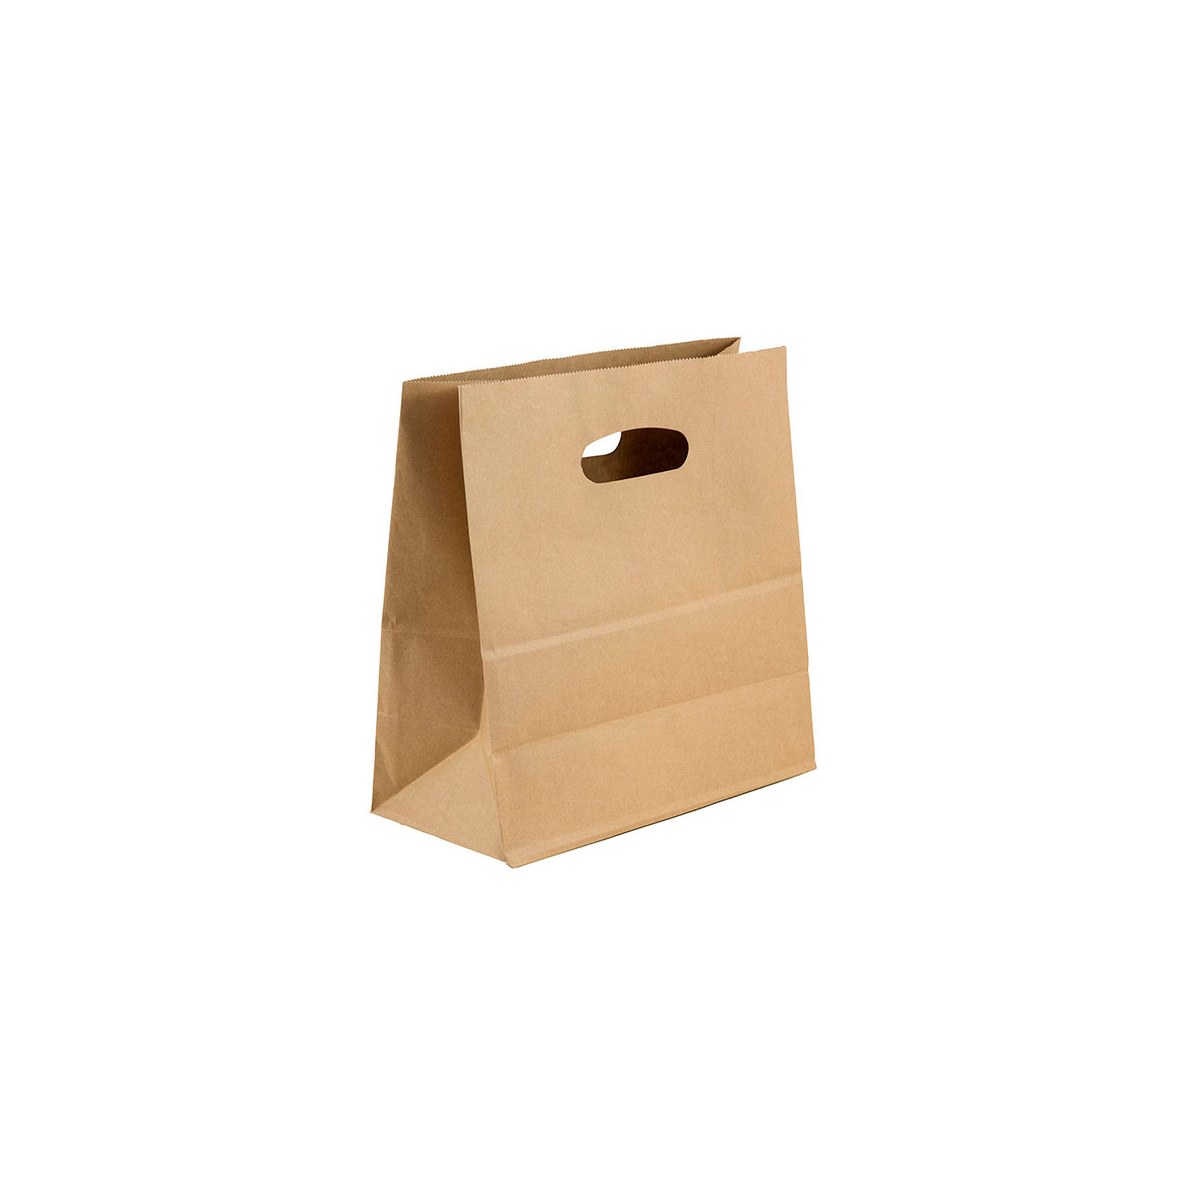 Bolsa de papel kraft 32x32x15 (cm) - Asa Troquelada